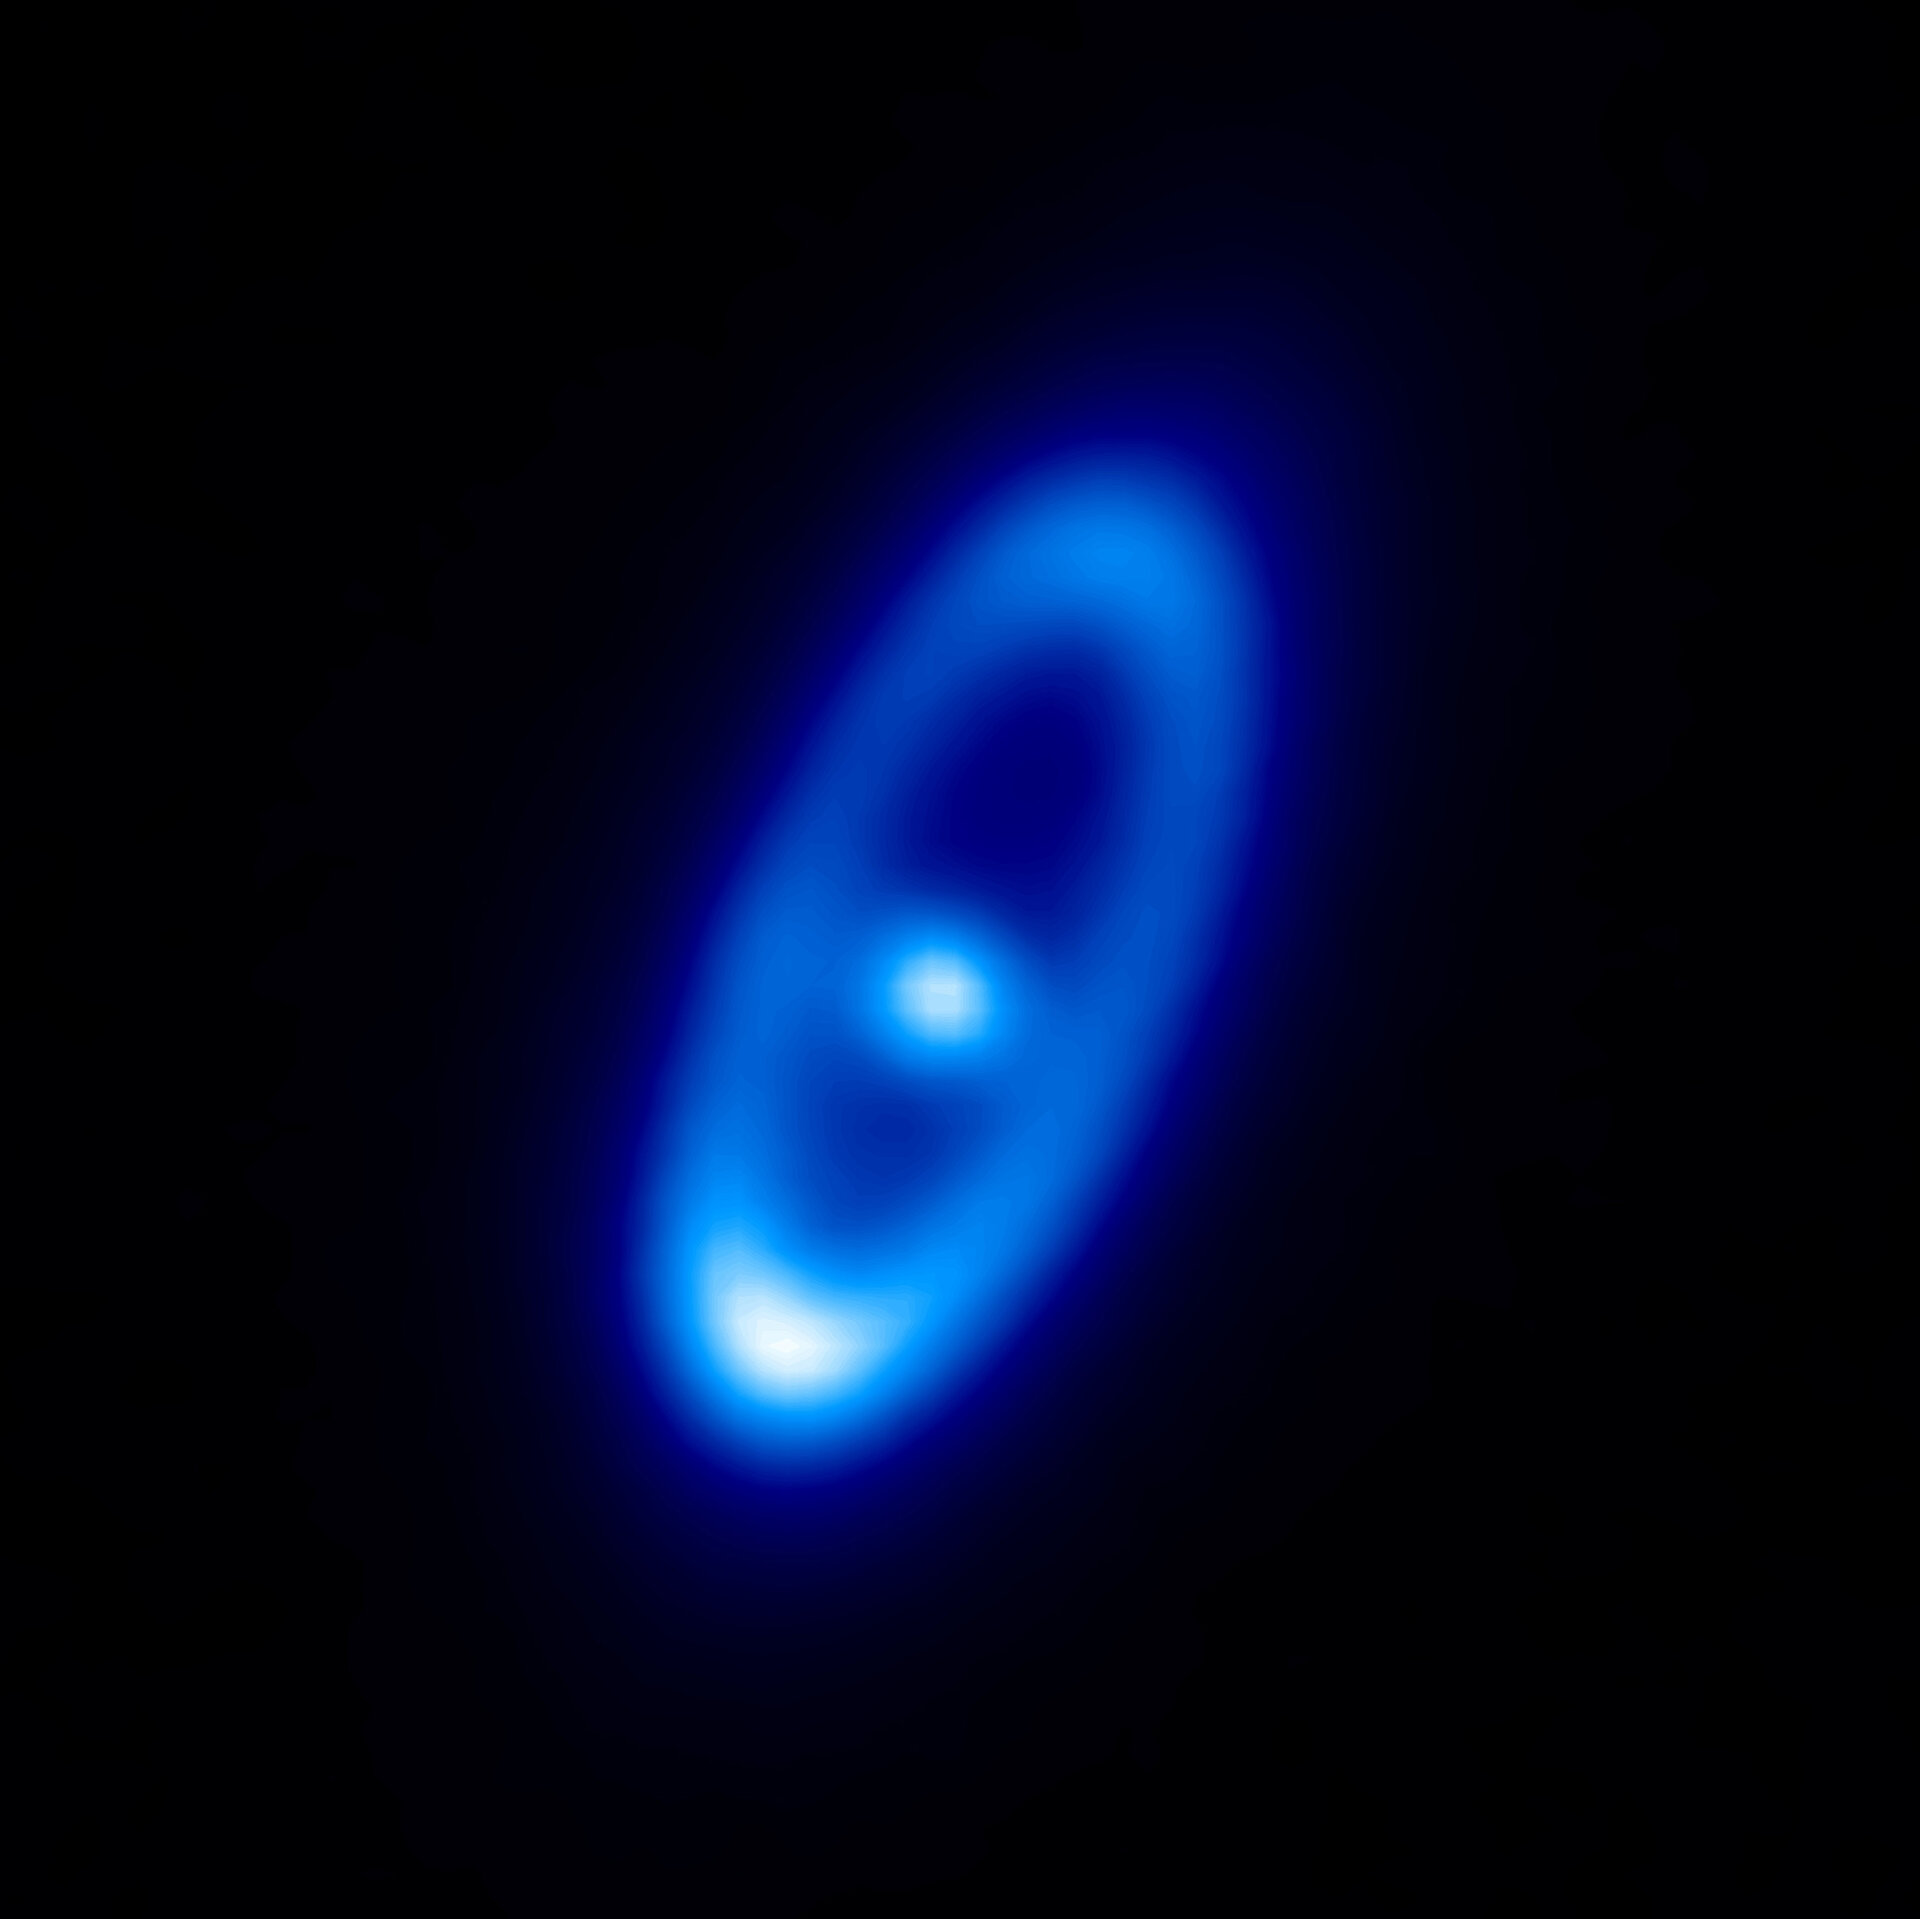 Snímek hvězdy Fomalhaut pořízený observatoří Herschel.